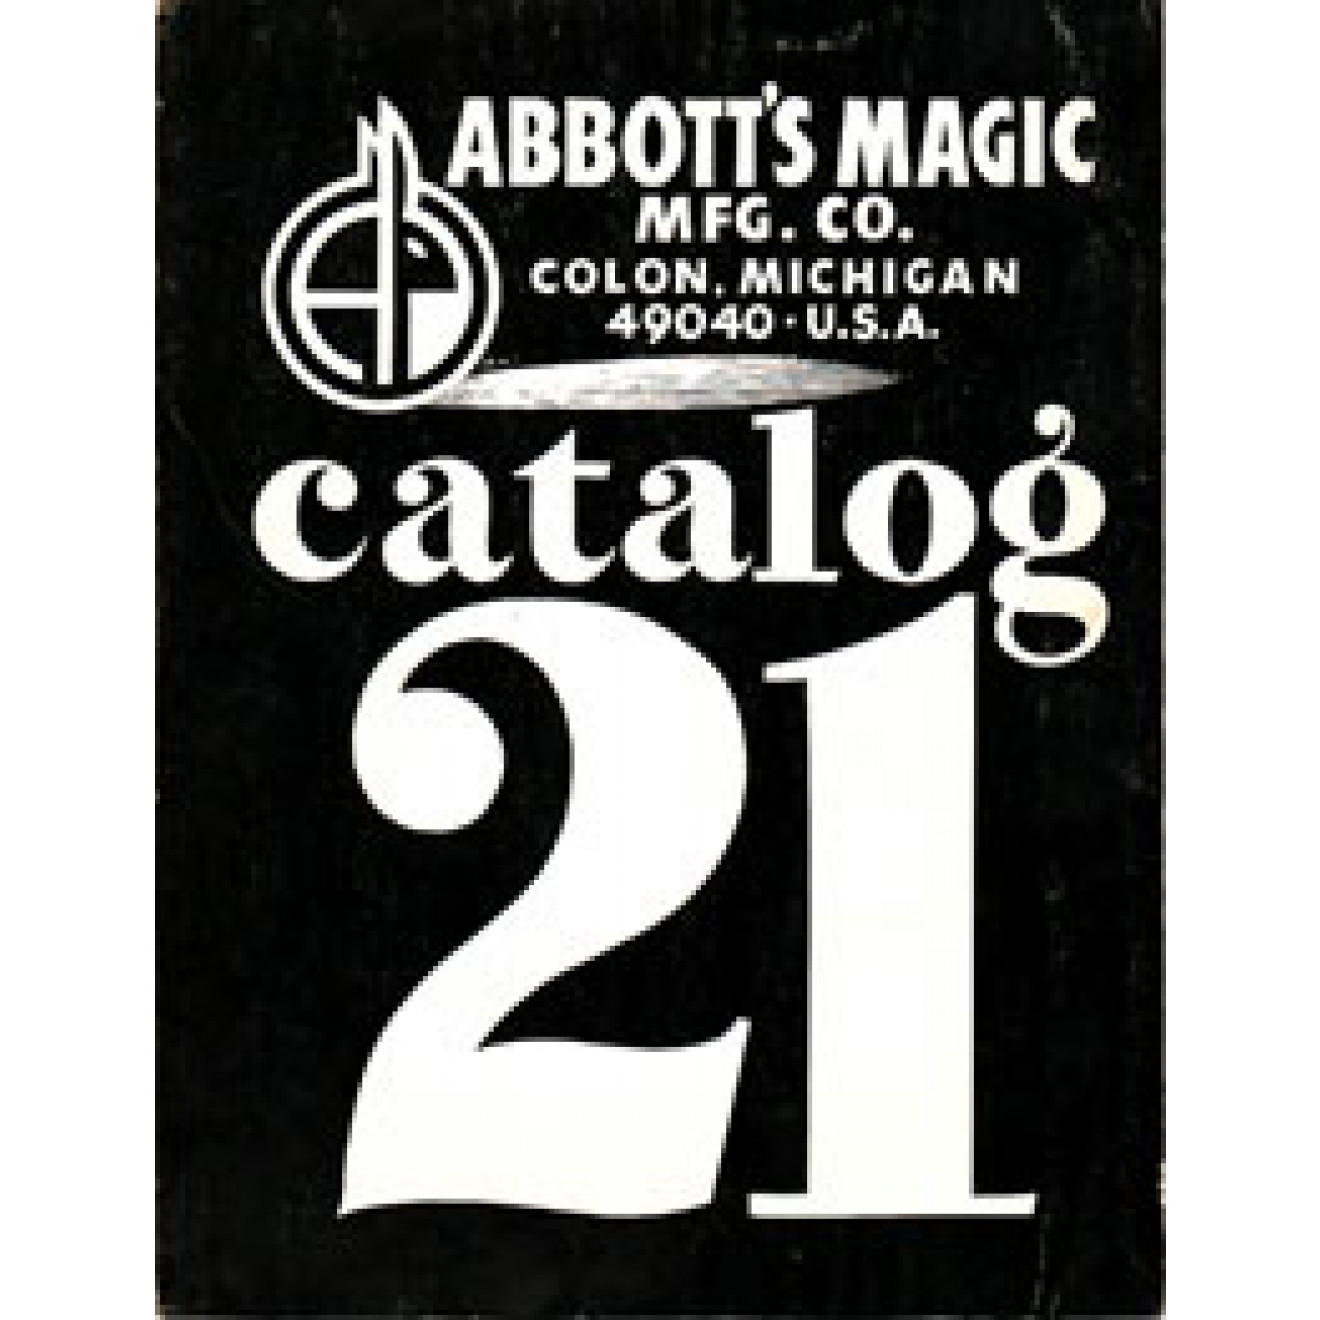 Abbott's Magic Catalog 21